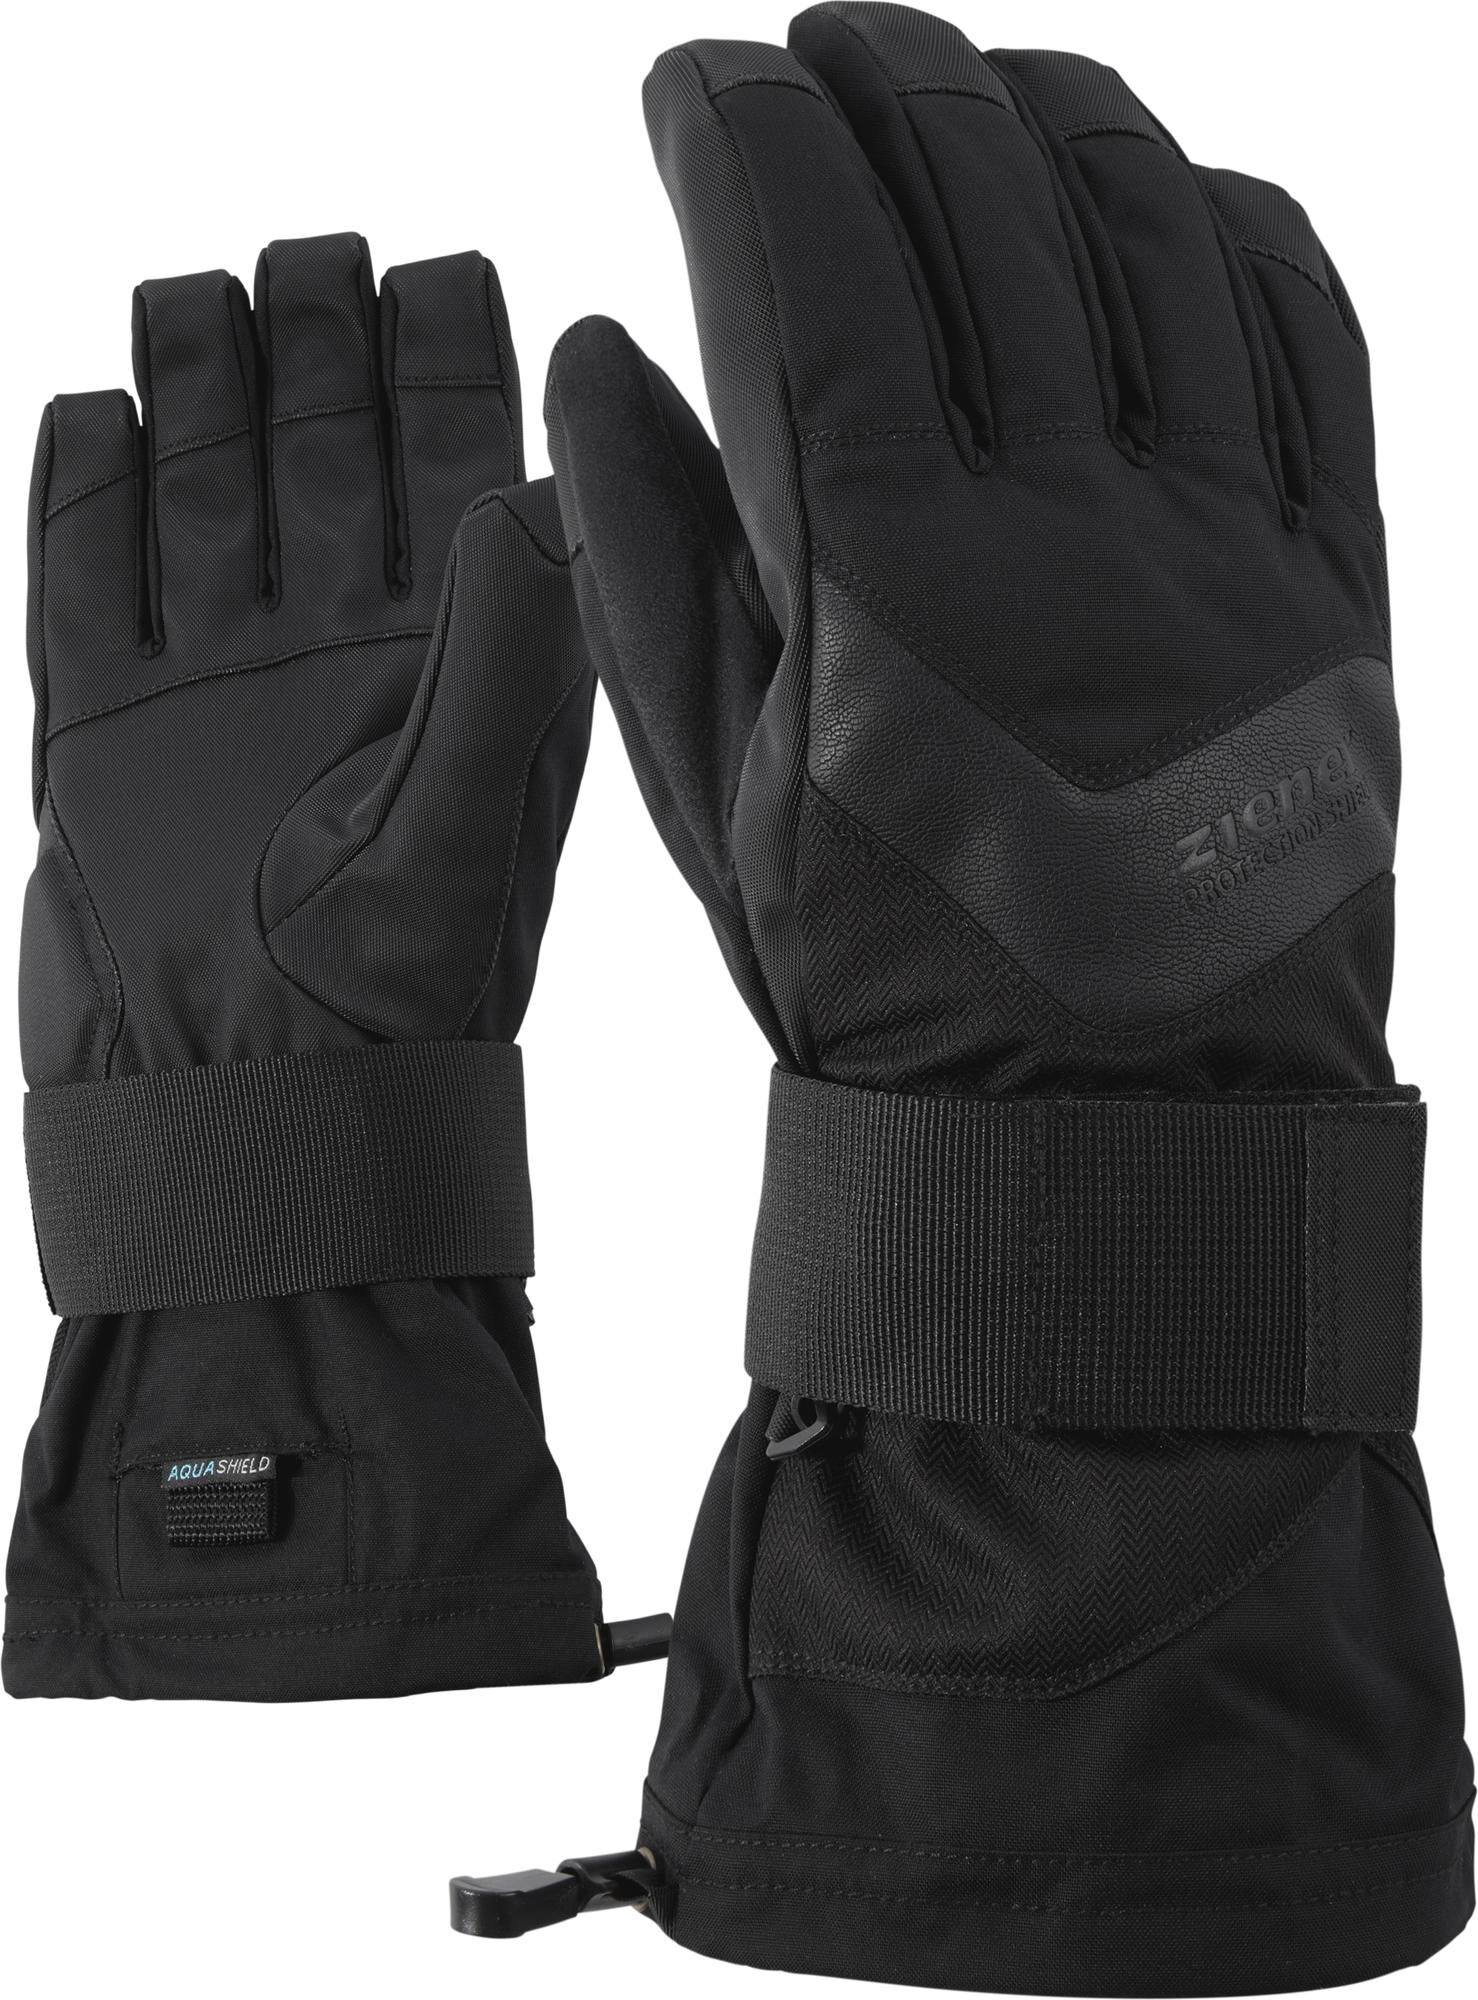 Ziener Milan ASR Glove SB black hb (937) 7,5